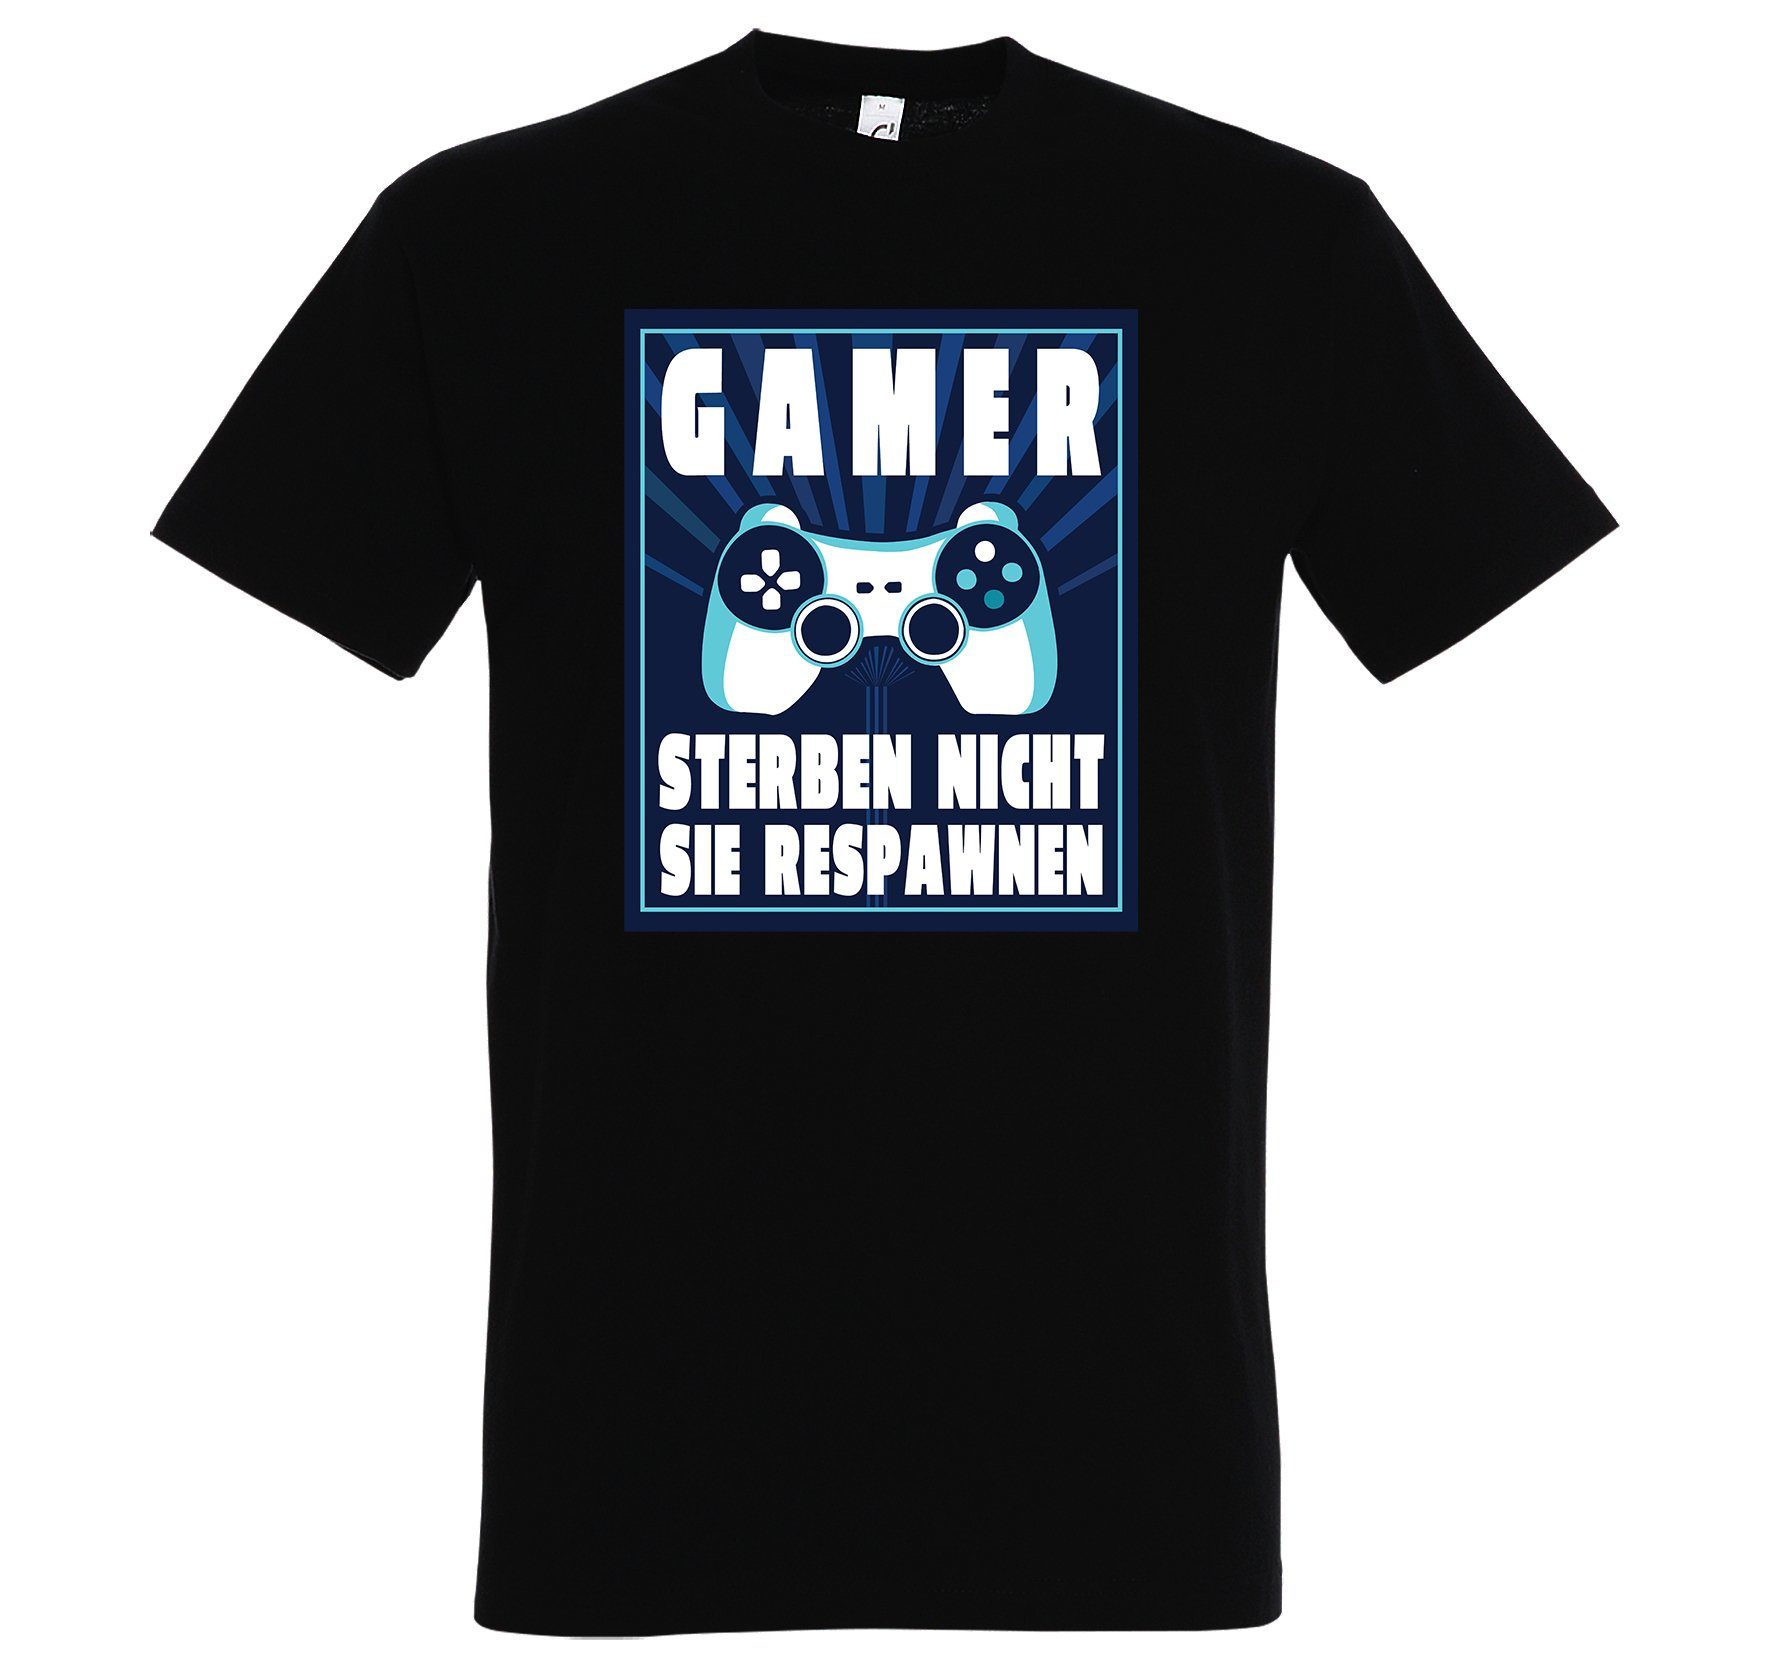 Youth Designz T-Shirt "Gamer Sterben Nicht, Sie Respawnen" Herren T-Shirt mit lustigem Spruch Schwarz